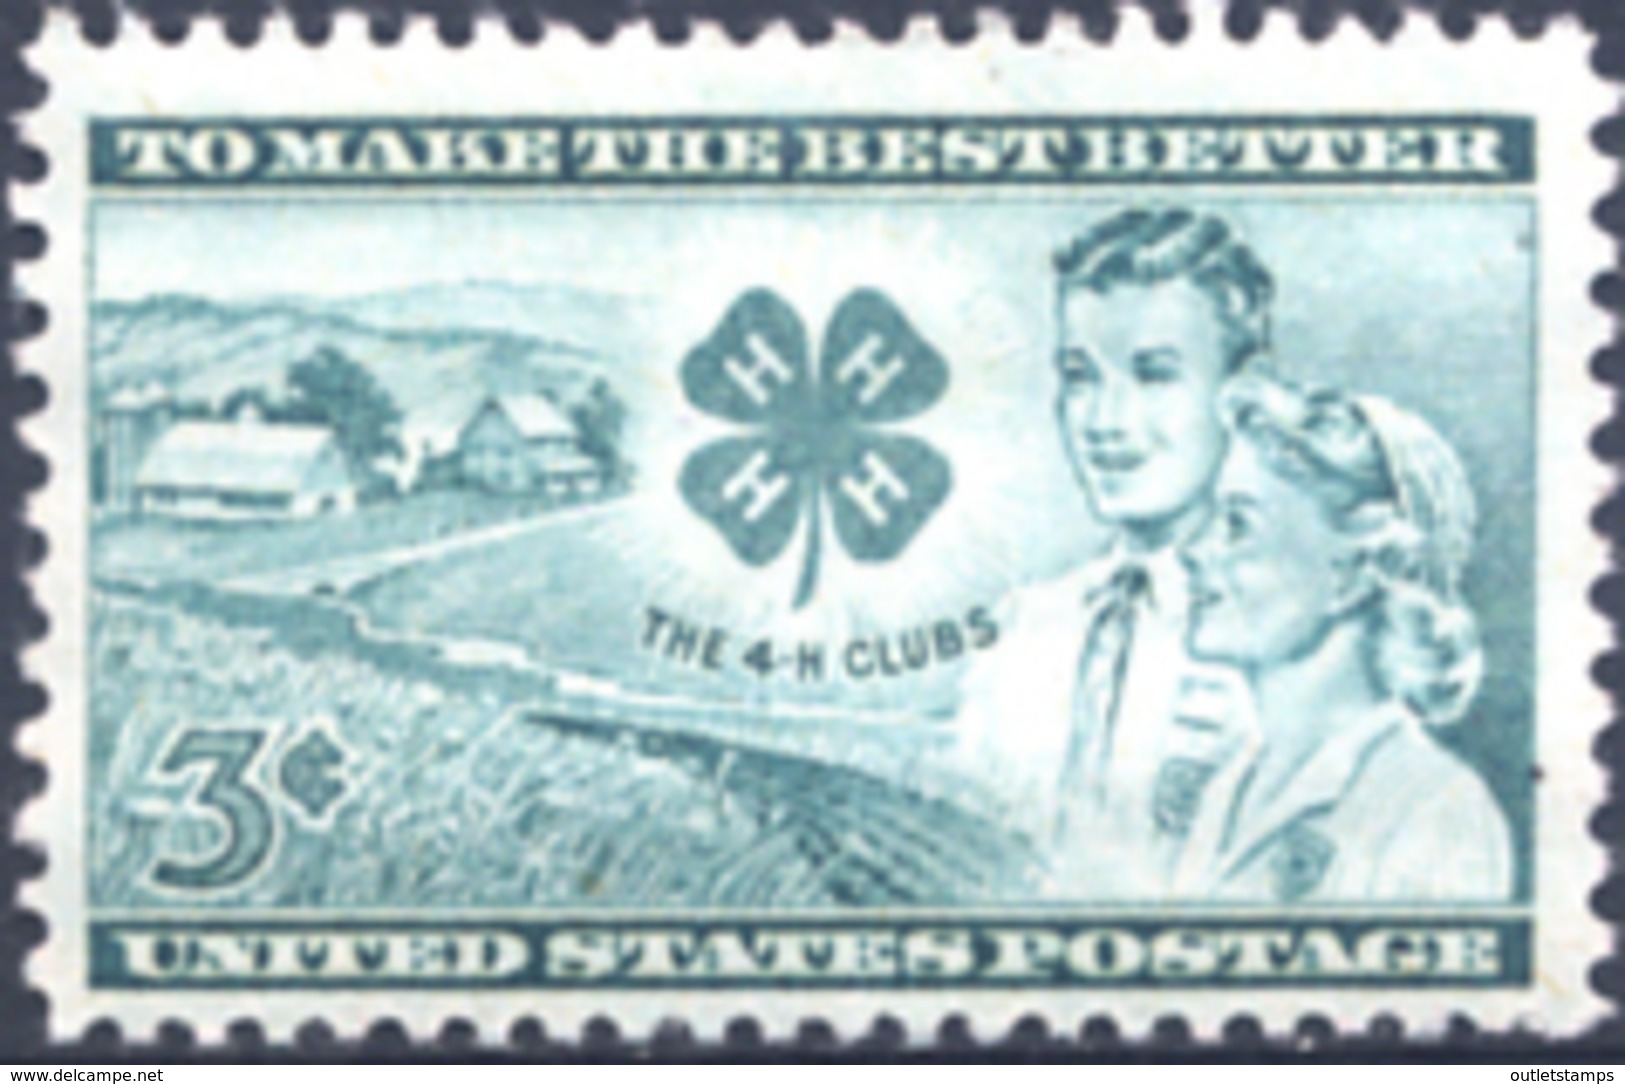 Ref. 161533 * NEW *  - UNITED STATES . 1952. CINQUENTENARIO DE LOS 4-H CLUBS - Unused Stamps